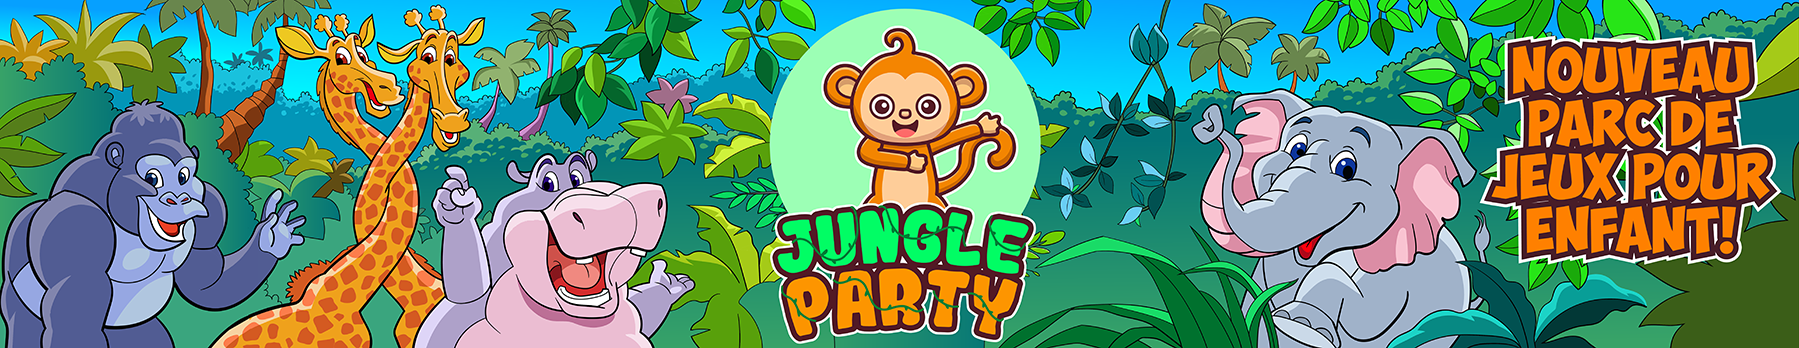 Bienvenue sur Jungle Party